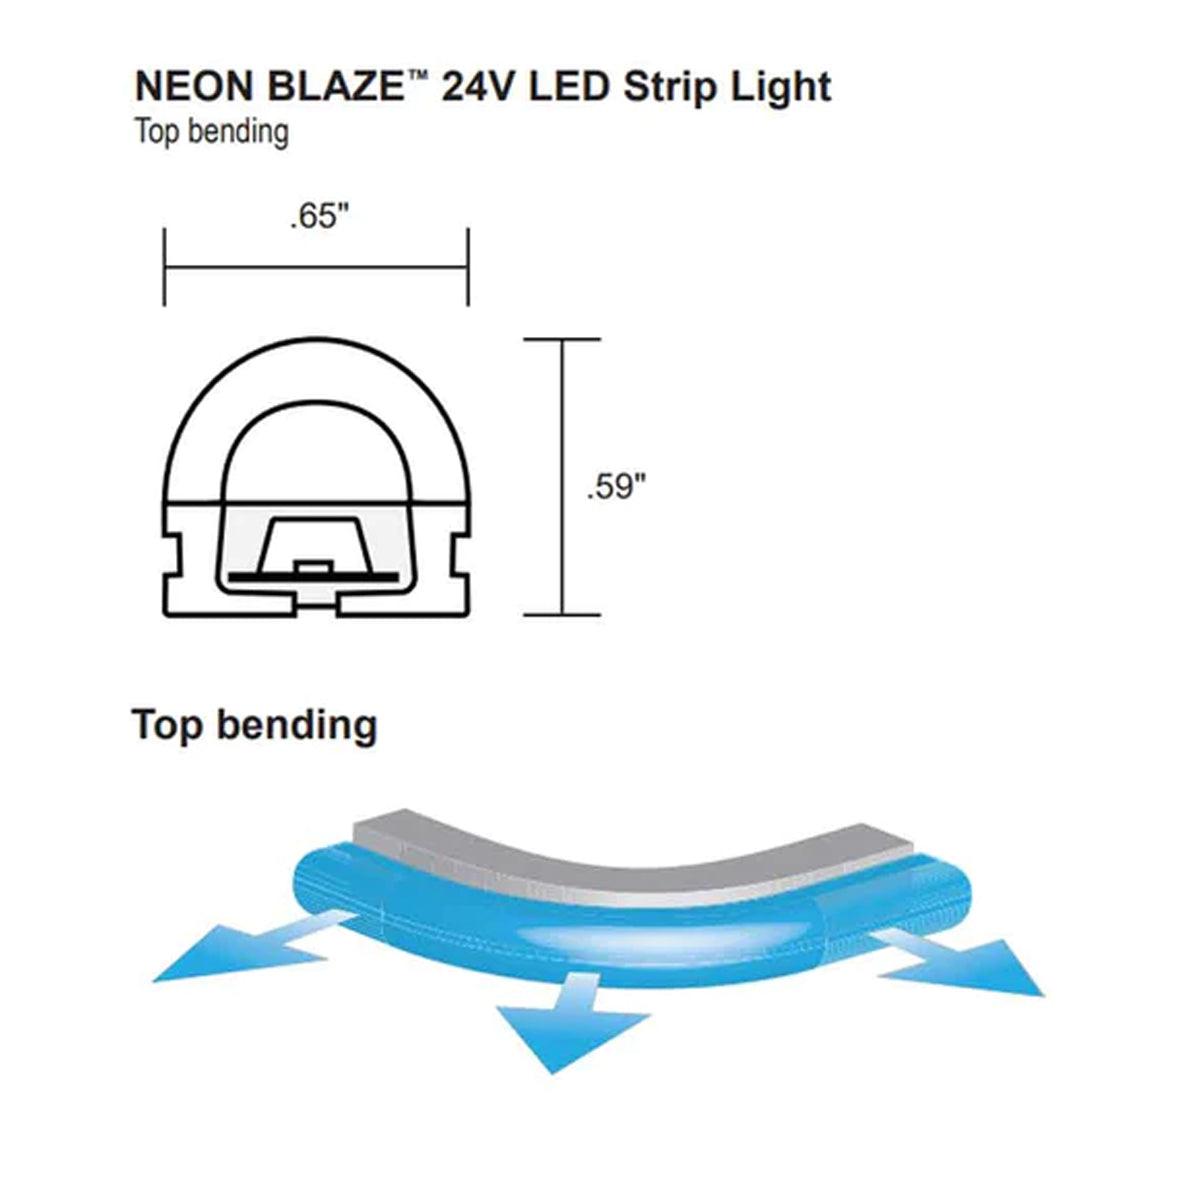 Neon BLAZE LED Neon Strip Light, Green, 24V, Top Bending